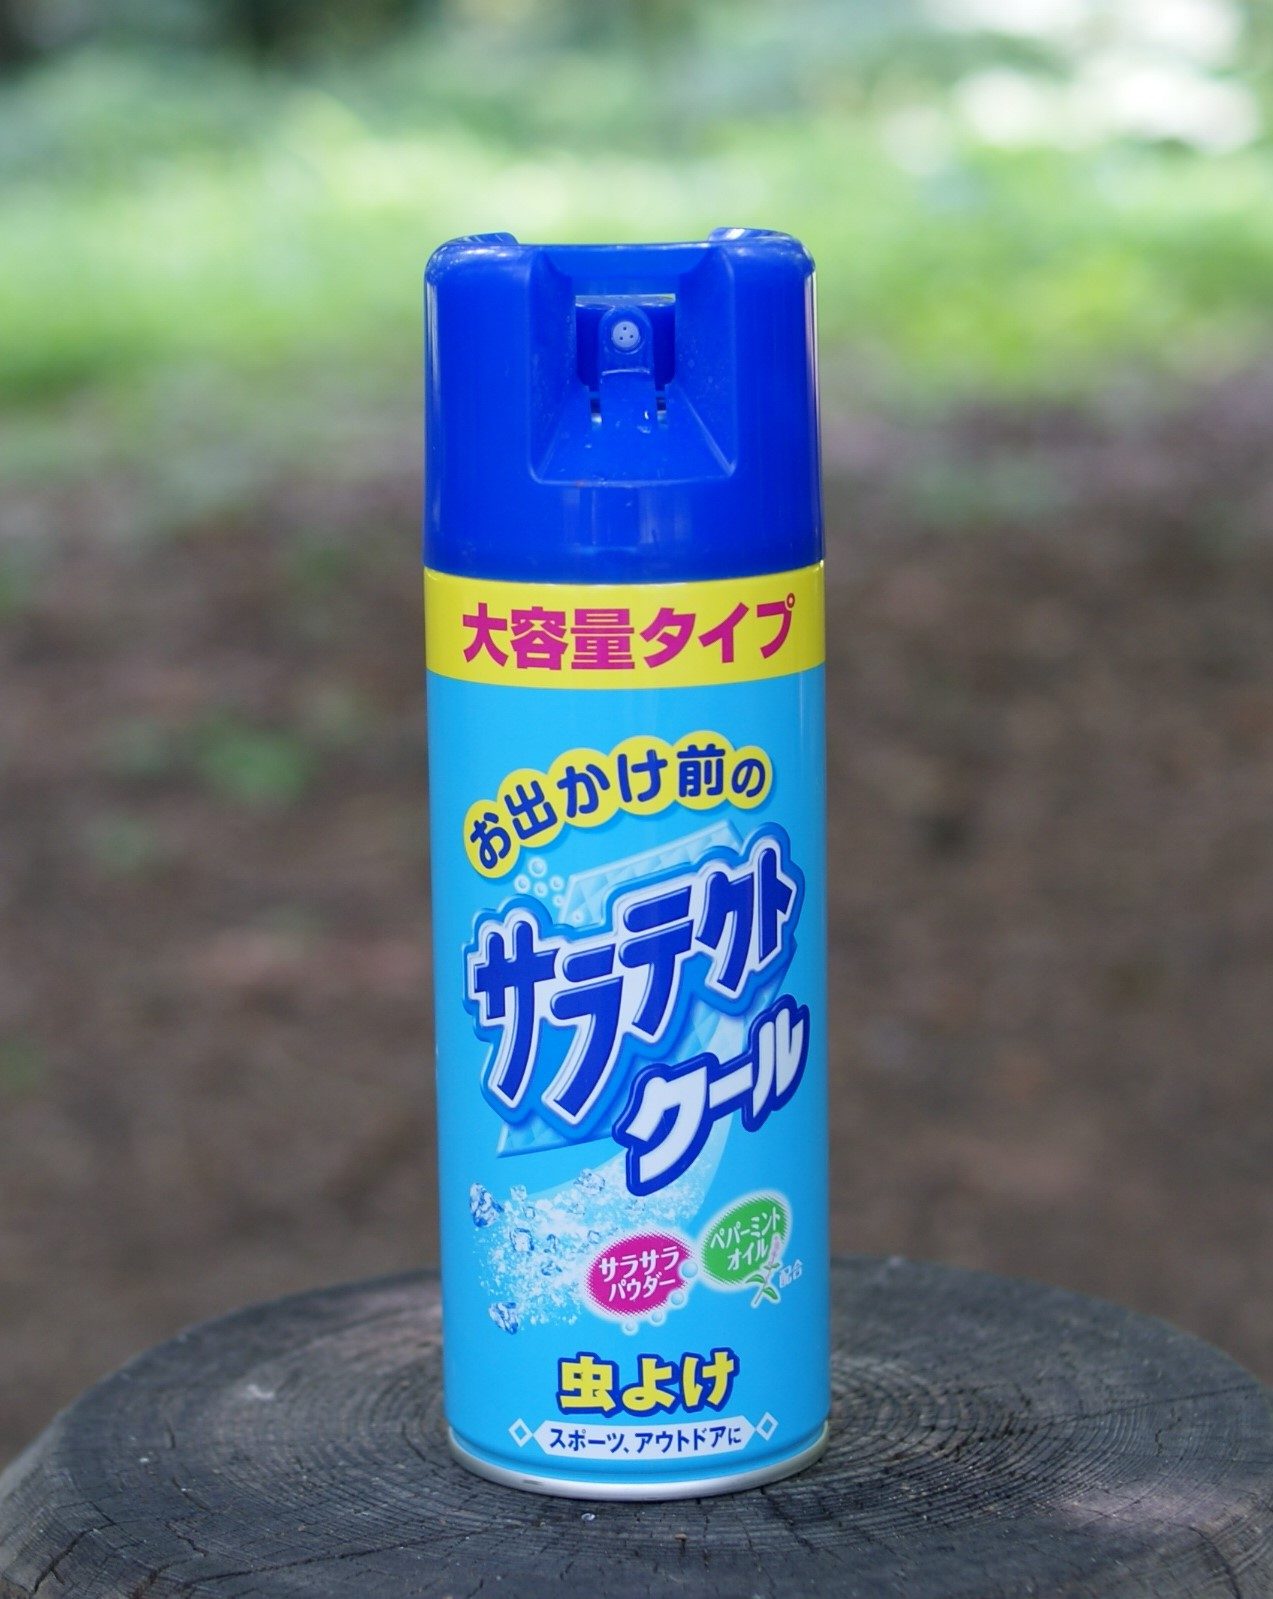 japanisches Mückenspray